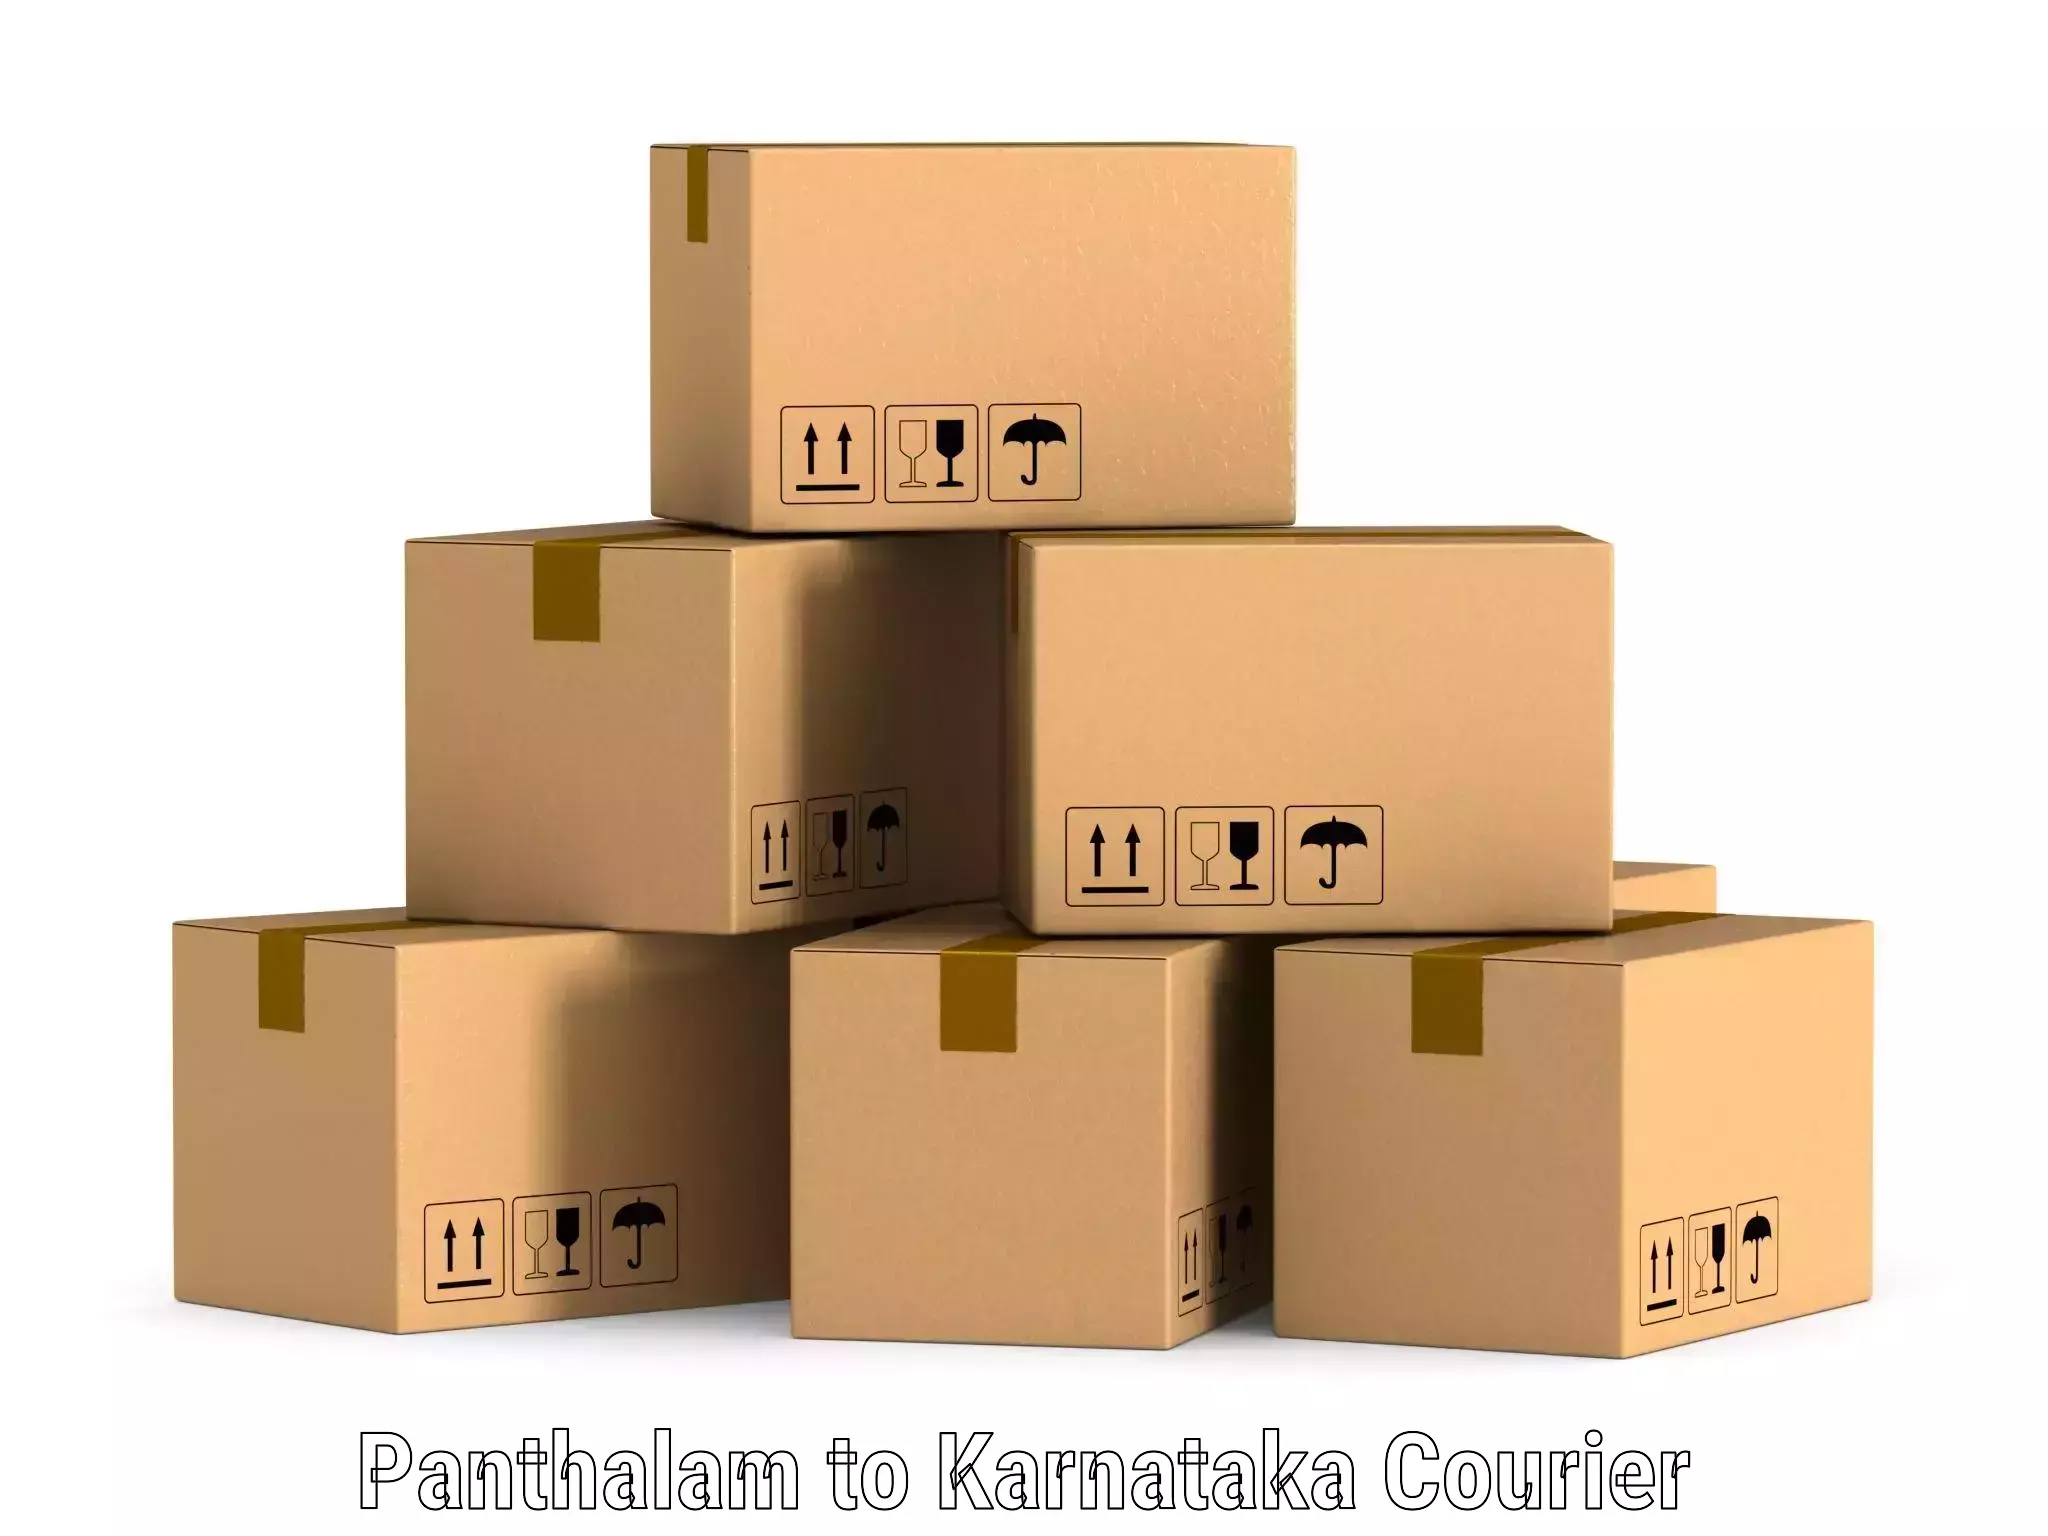 Multi-city courier Panthalam to Karnataka